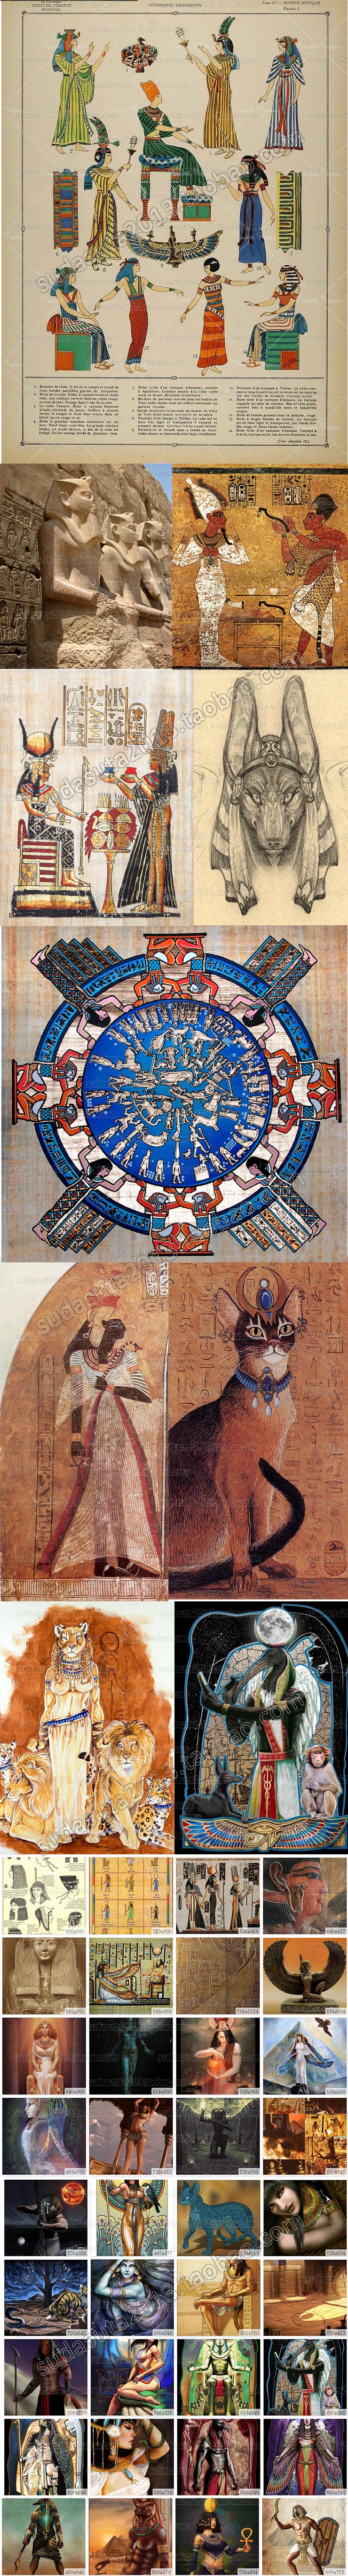 3900张古代埃及神话图片法老文化古文明工艺品壁画尼罗河女王